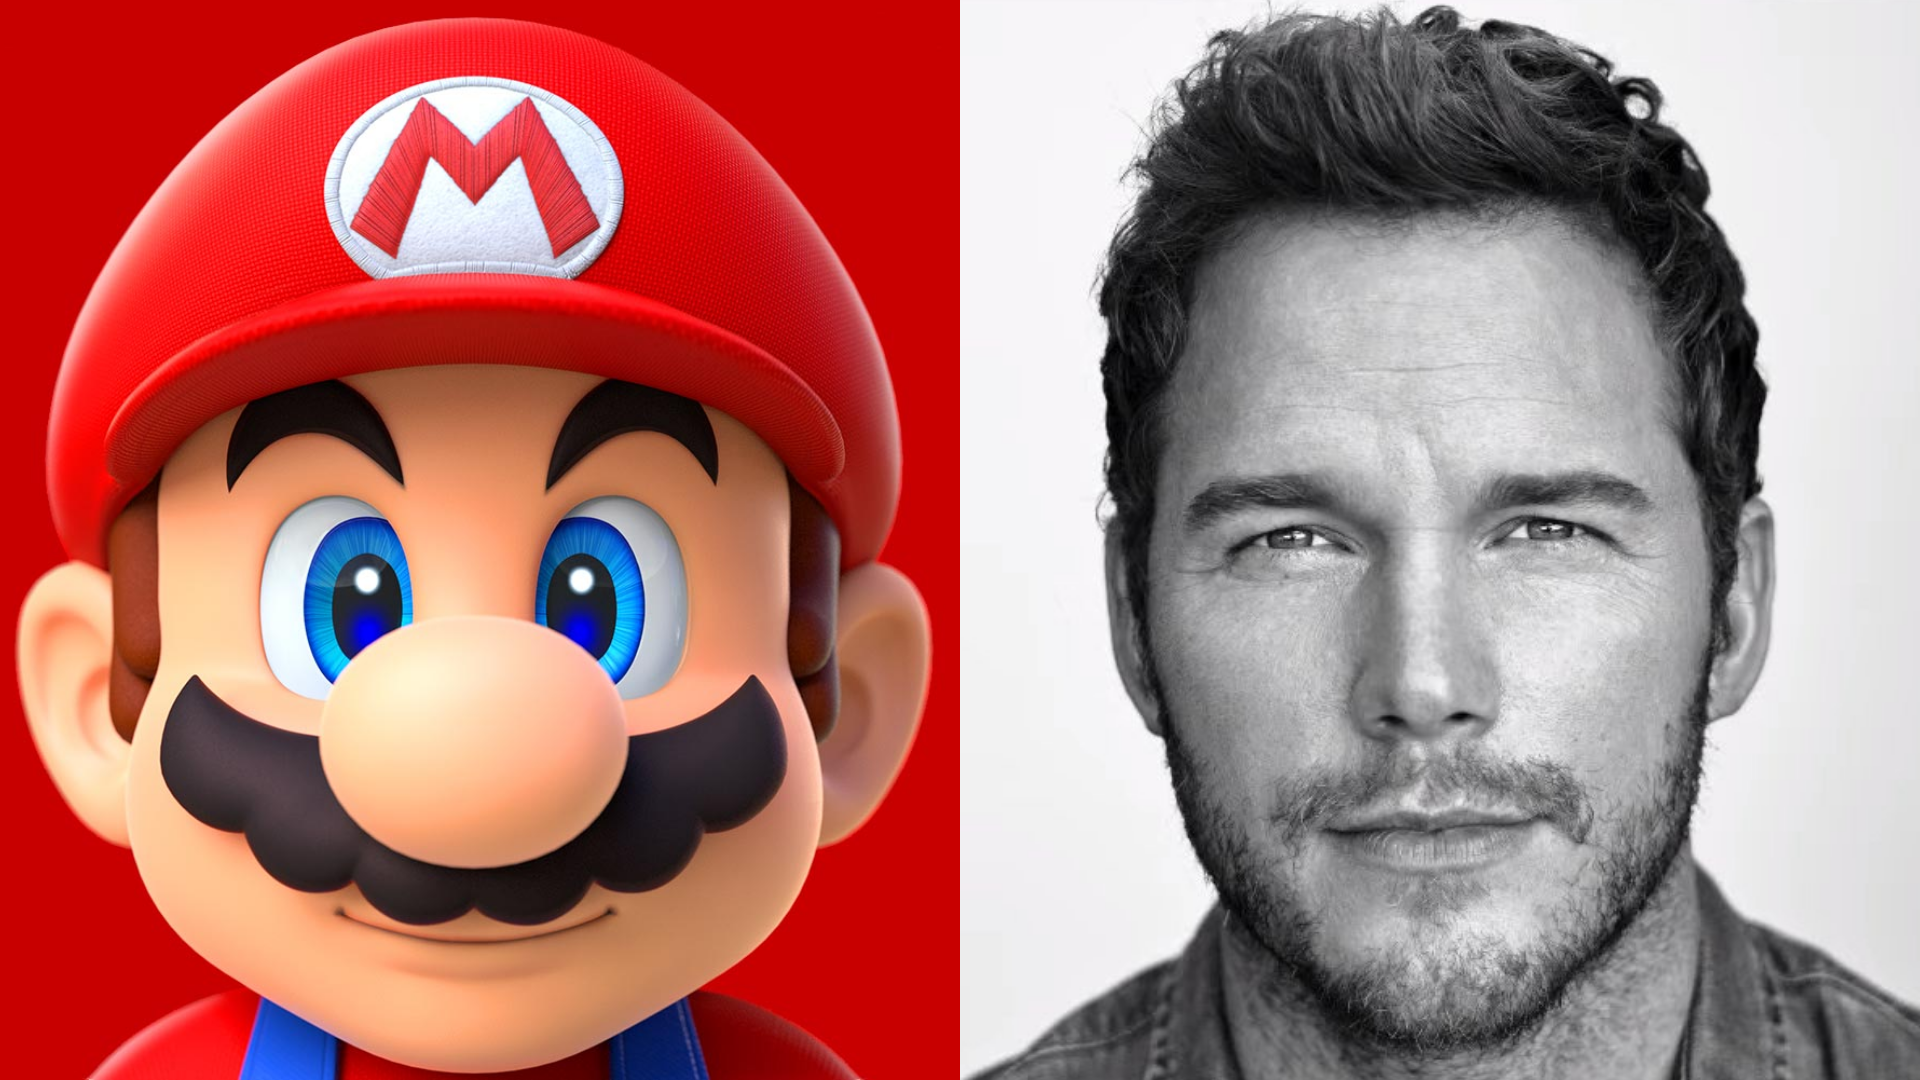 Nintendo 'precisava participar' do novo filme de Mario Bros, diz